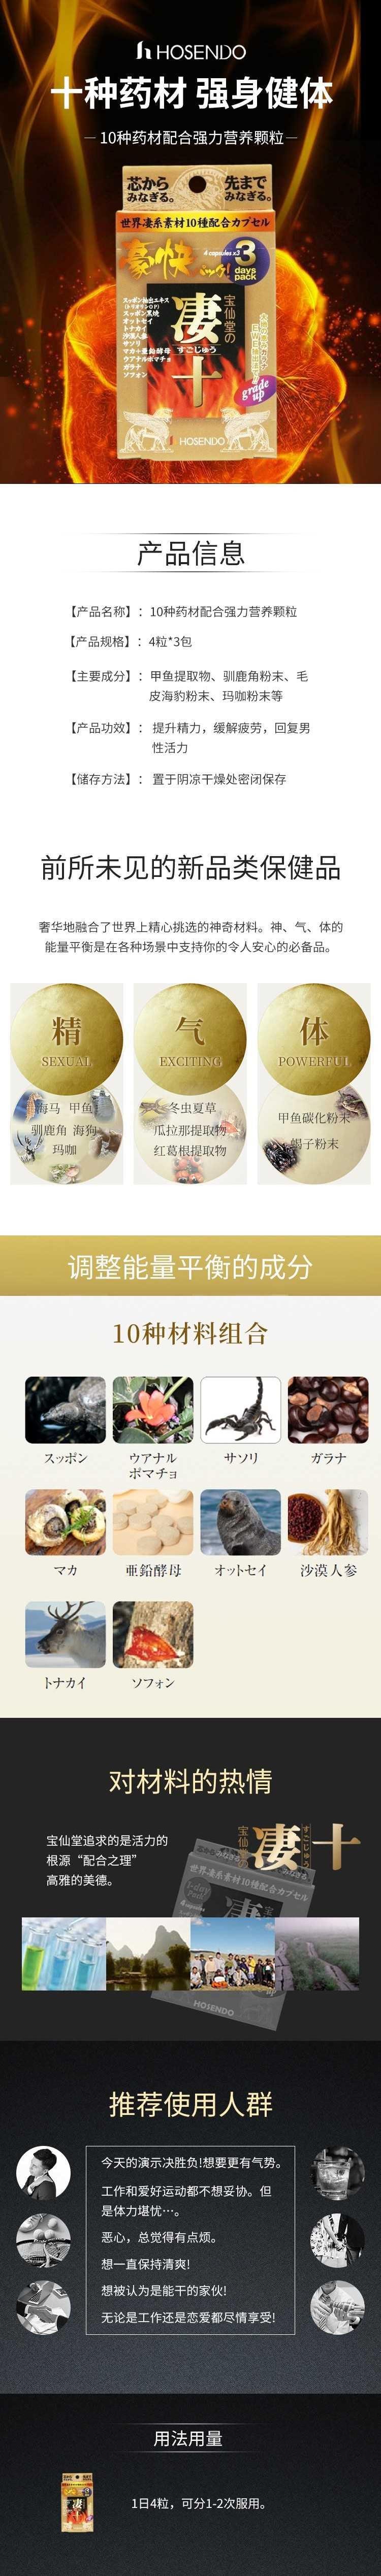 【日本直邮】Hoshisan 宝仙堂凄十 世界各国动植物系10种药材配合强力颗粒 3日量4粒*3包